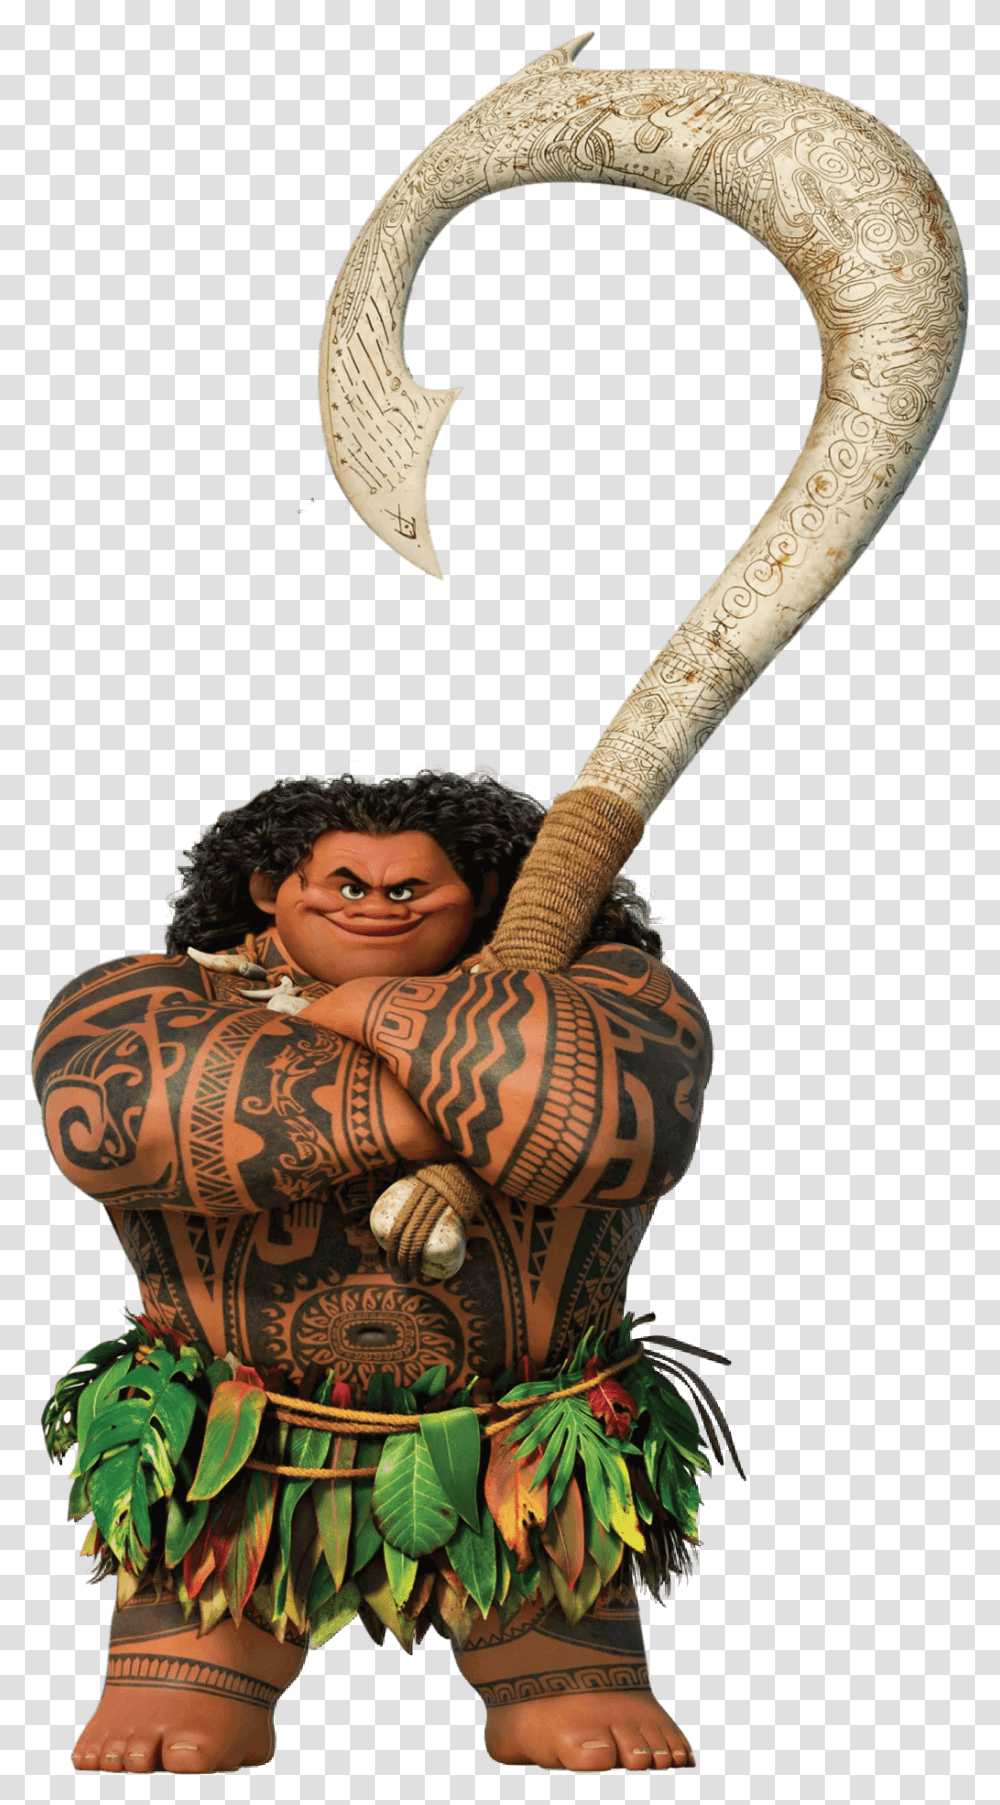 Maui Moana Disney Maui Moana, Person, Human, Toy, Figurine Transparent Png